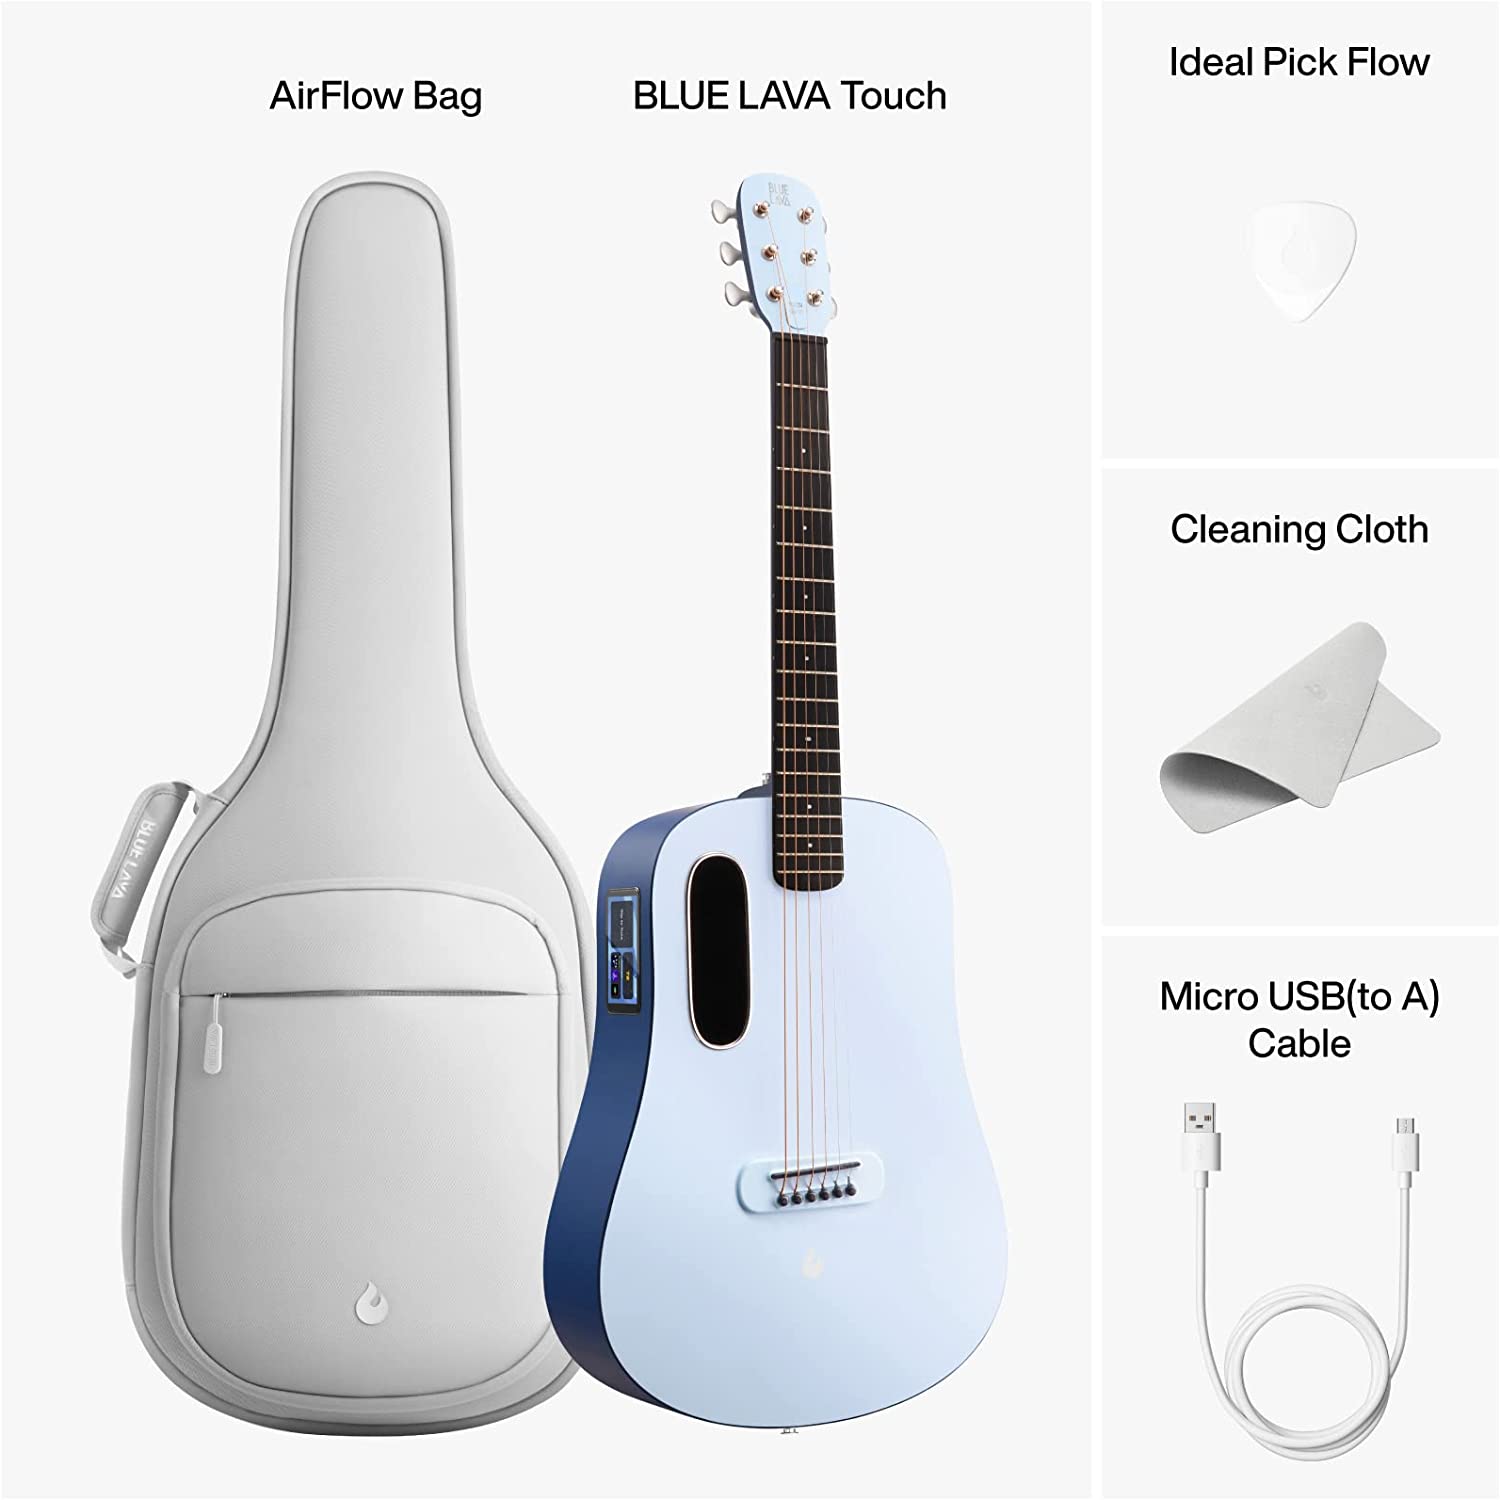 BLUE LAVA Touch Smart Guitar